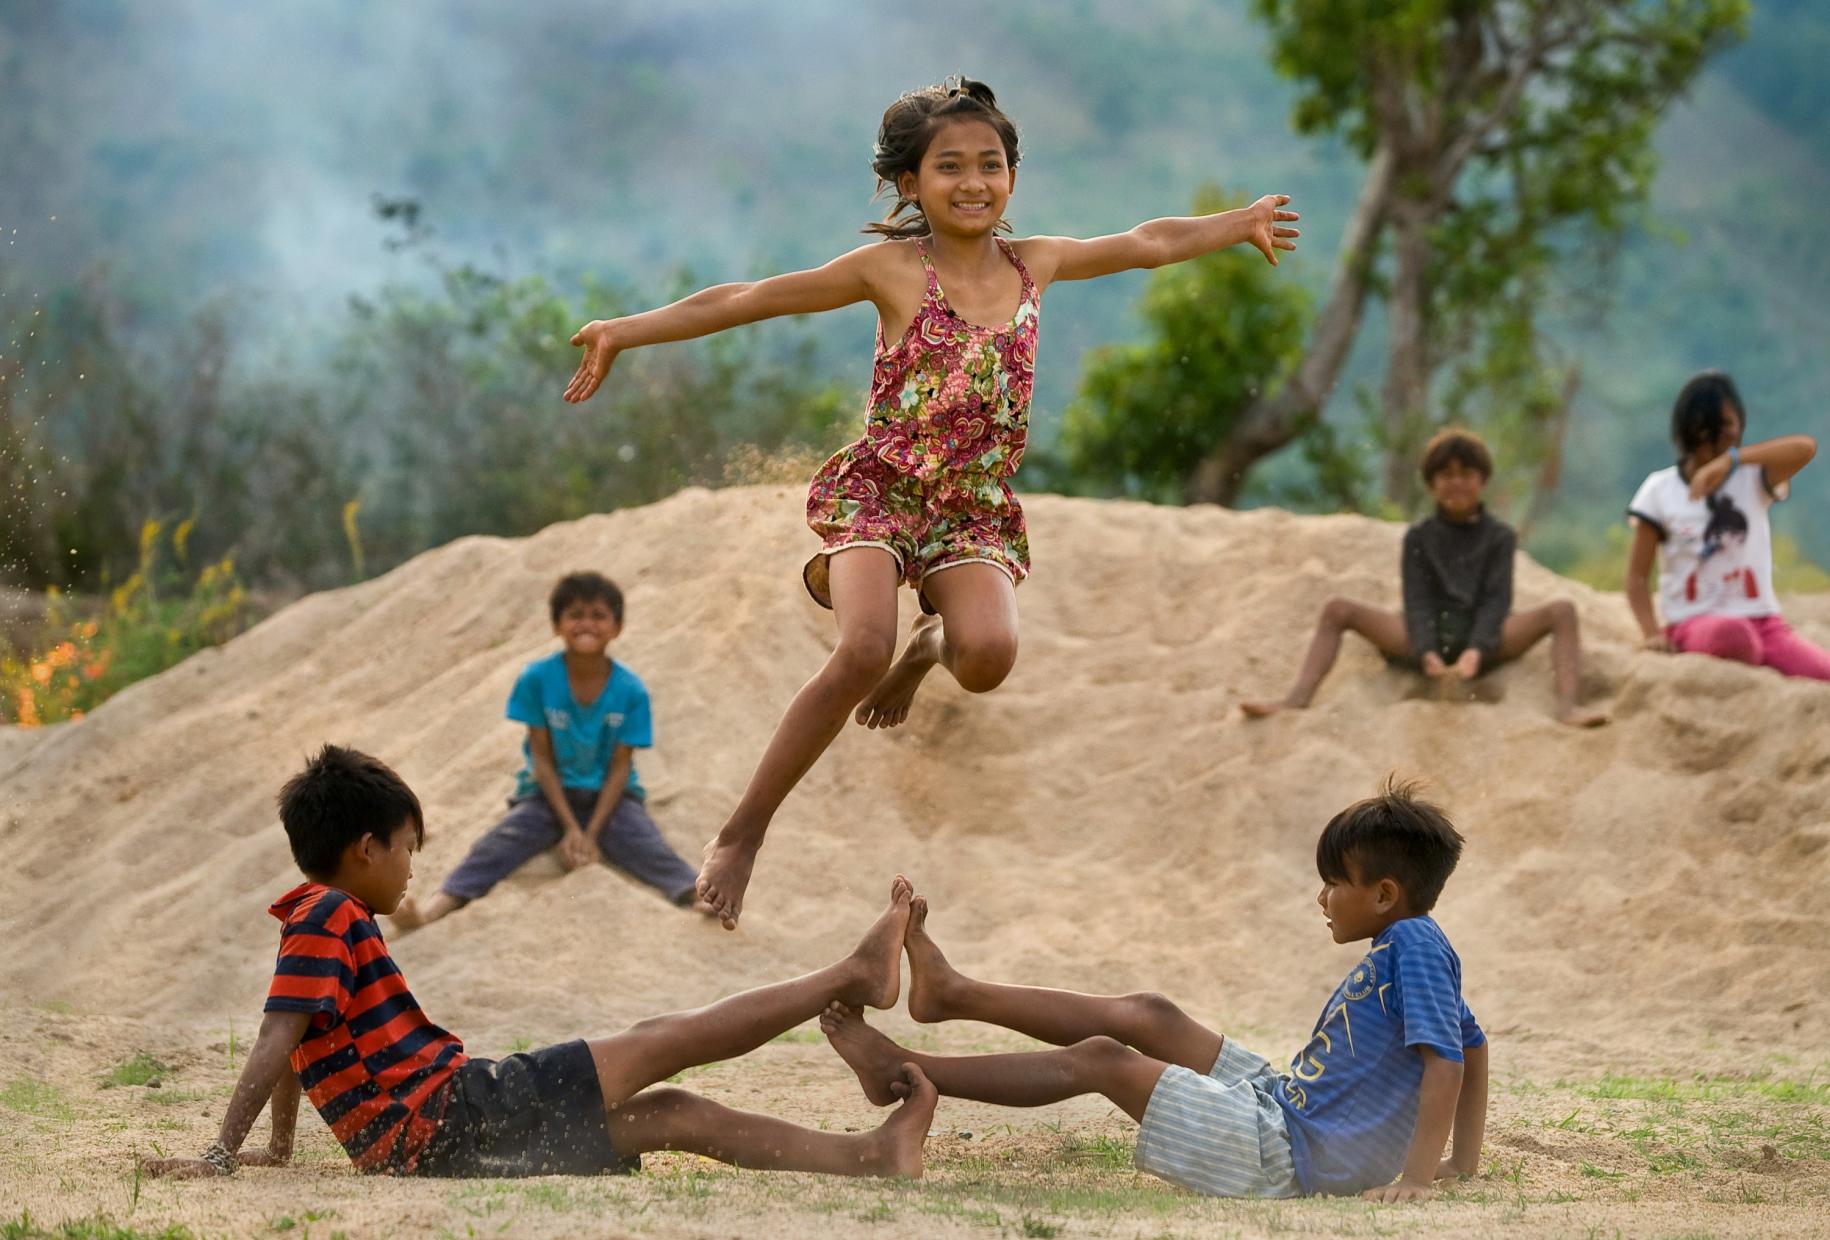 Un grupo de seis niños y niñas juegan al aire libre. Dos niños están en el suelo tocándose los pies, mientras que una niña está congelada en el aire saltando felizmente por encima de ellos.